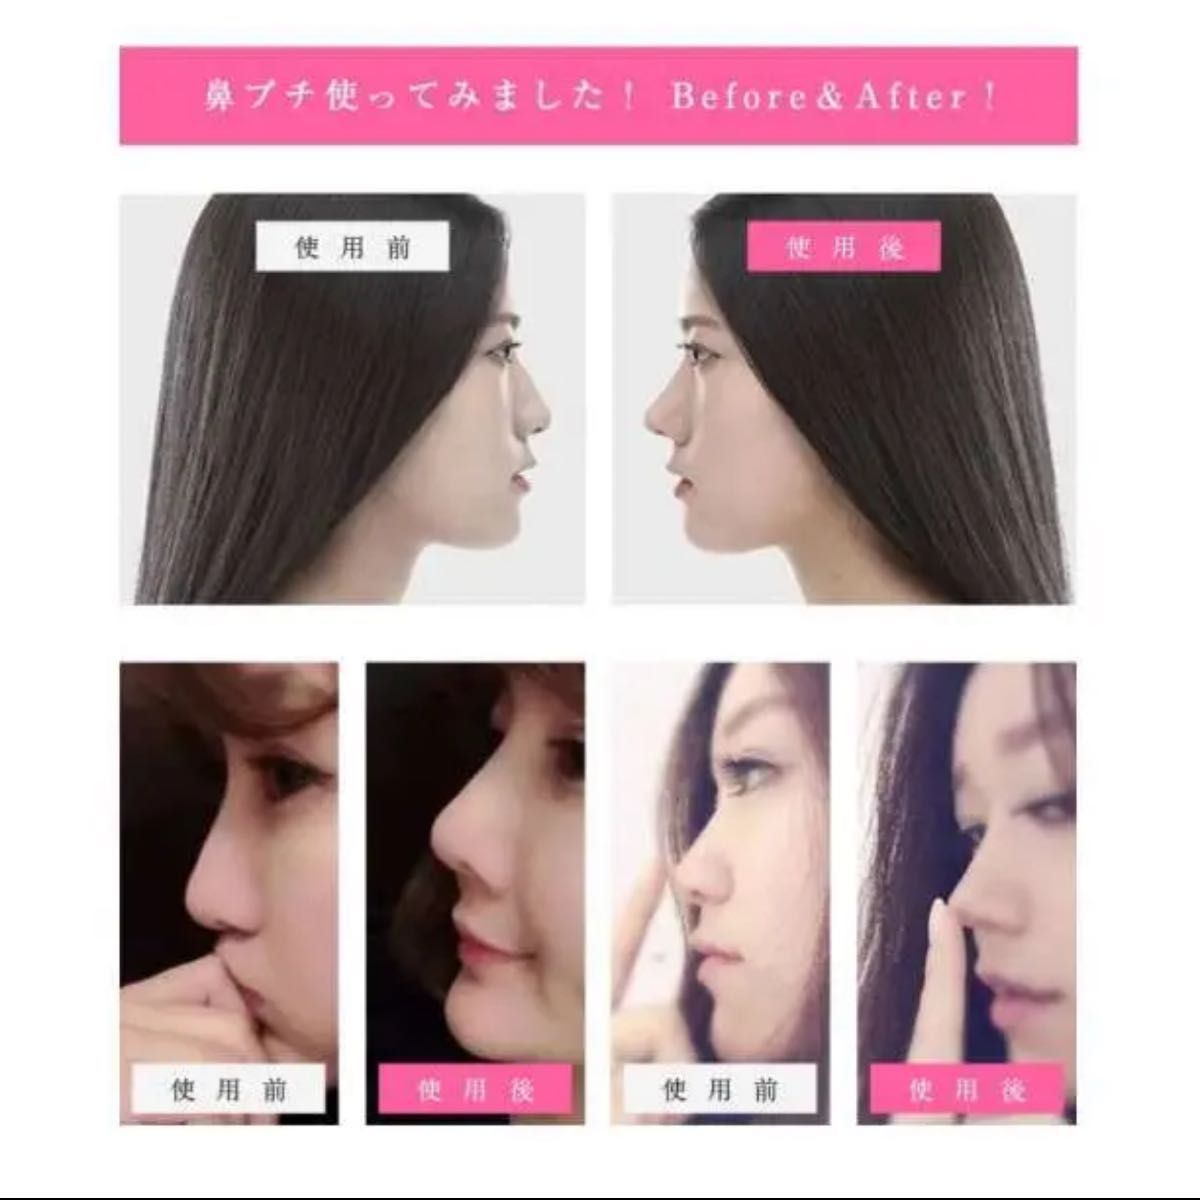 鼻プチ 3サイズセット ノーズアップ 矯正 整形 矯正 鼻高美人 小顔効果 韓国 通販